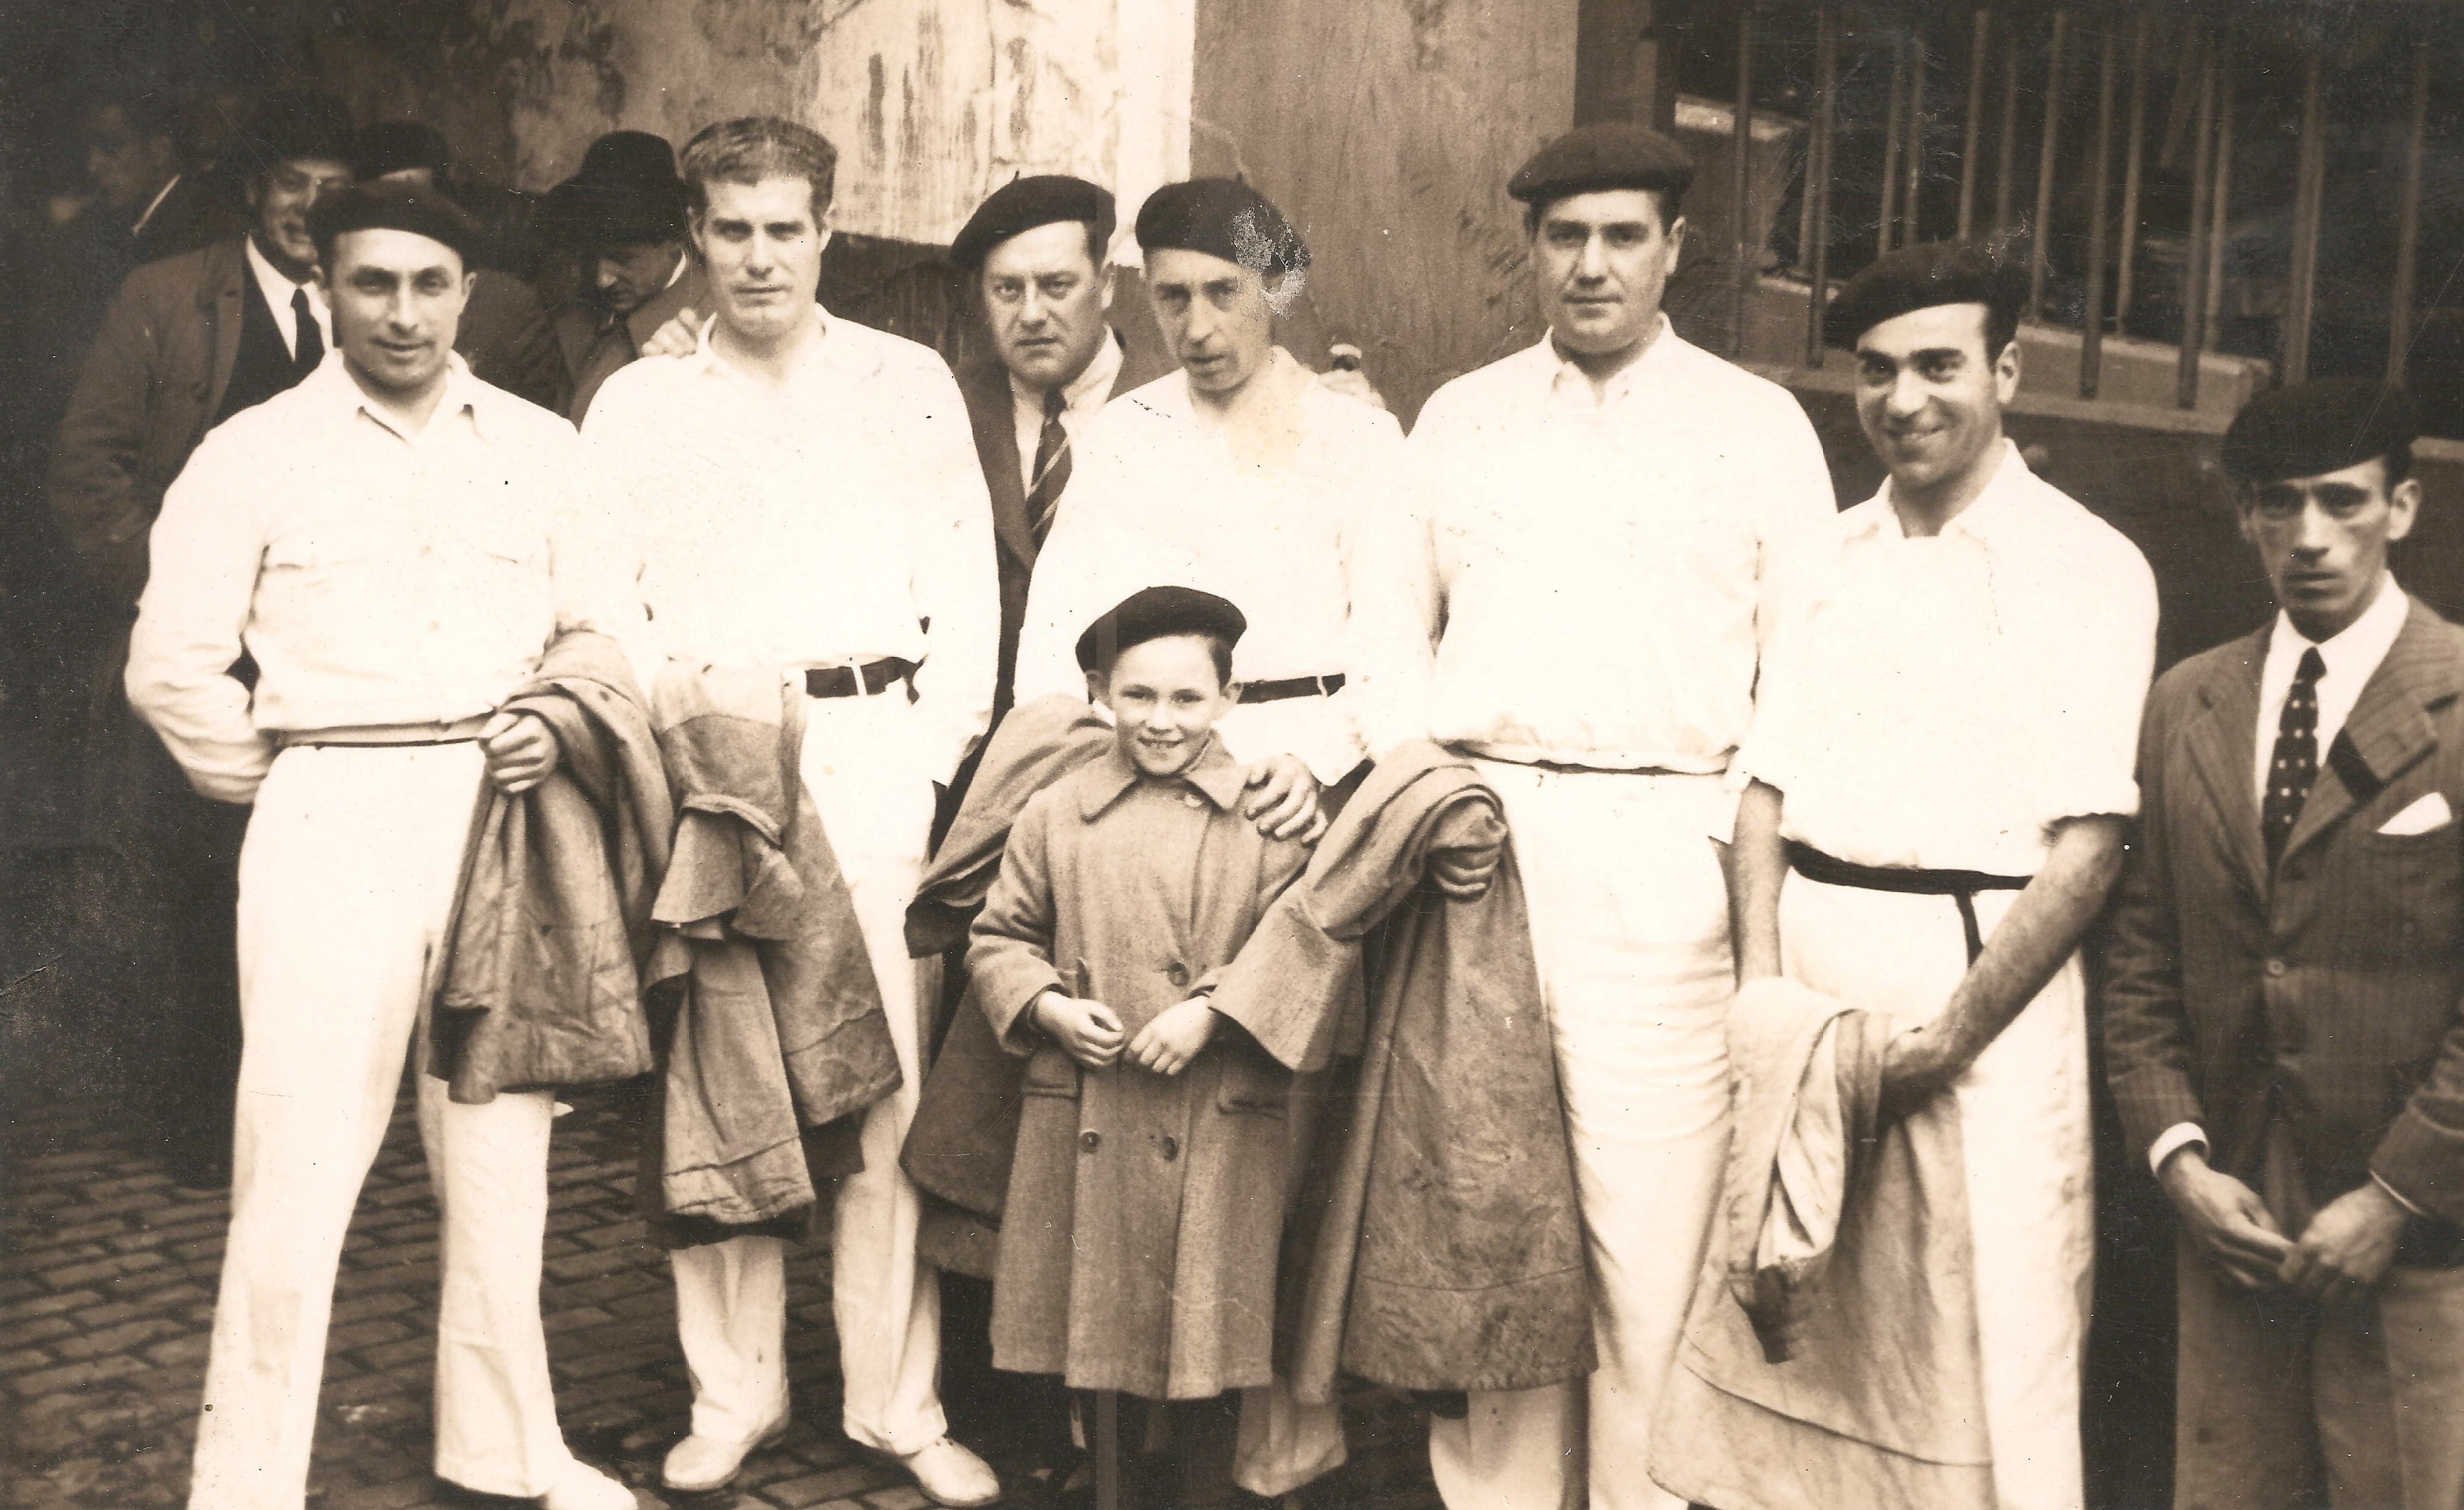 Félix Izagirre acompañado de otros hombres el día que estuvo en la plaza de toros de Bilbao. Hay siete hombres y un niño, cinco visten de blanco, dos hombres de traje y corbata. Todos llevan txapela menos Félix Izaguirre Garate. La fotografía es en blanco y negro.